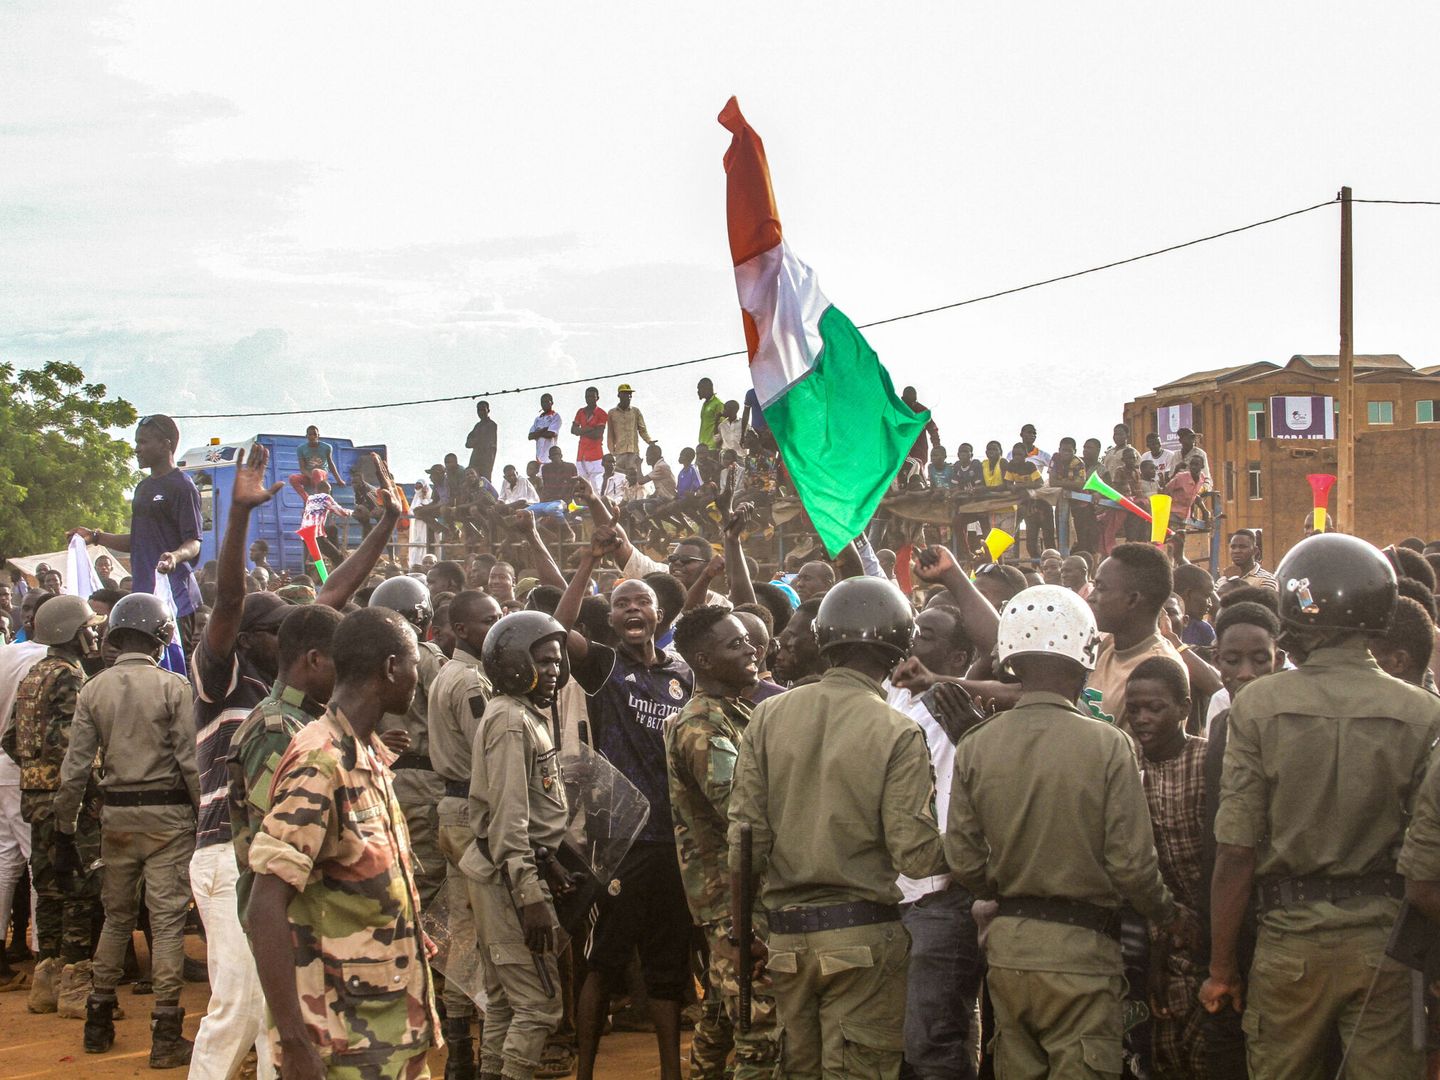 Partidarios del golpe participan en una manifestación frente a una base del ejército francés en Niamey. (Reuters/Mahamadou Hamidou)